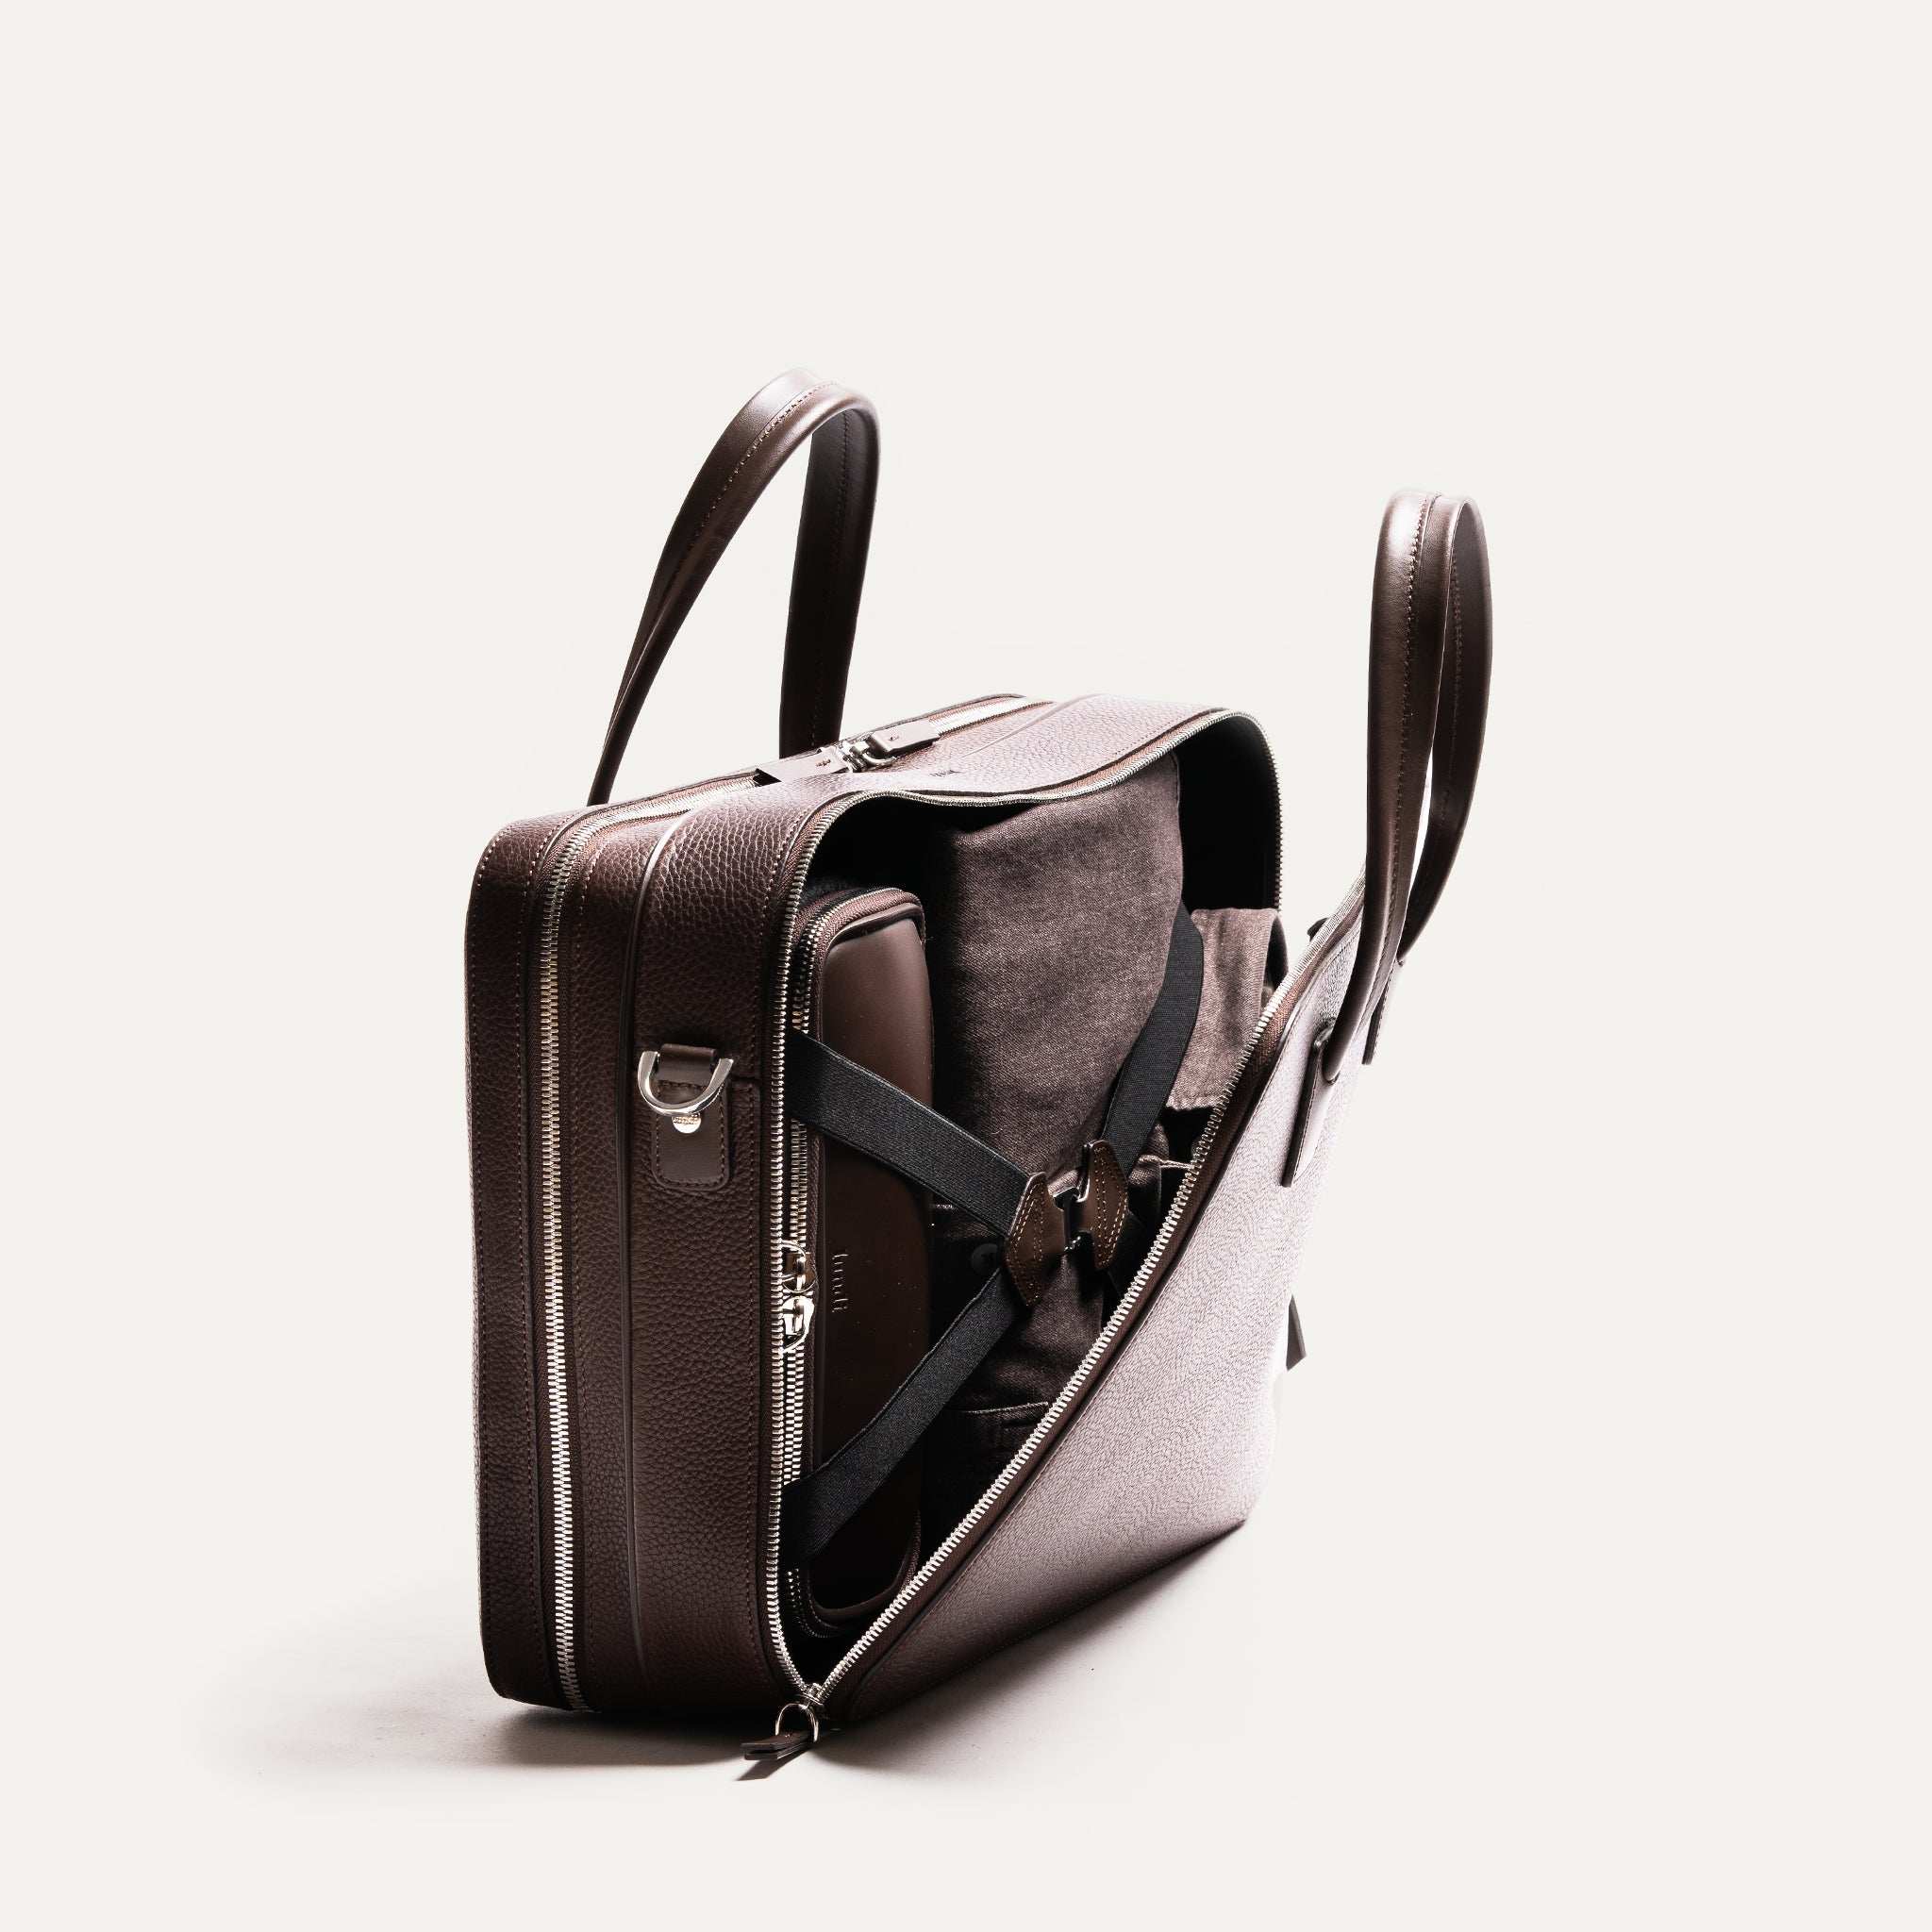 ce sac pour ordi sera idéal pour ranger vos dossiers volumineux ou vos accessoires indispensables à vos journées de travail.